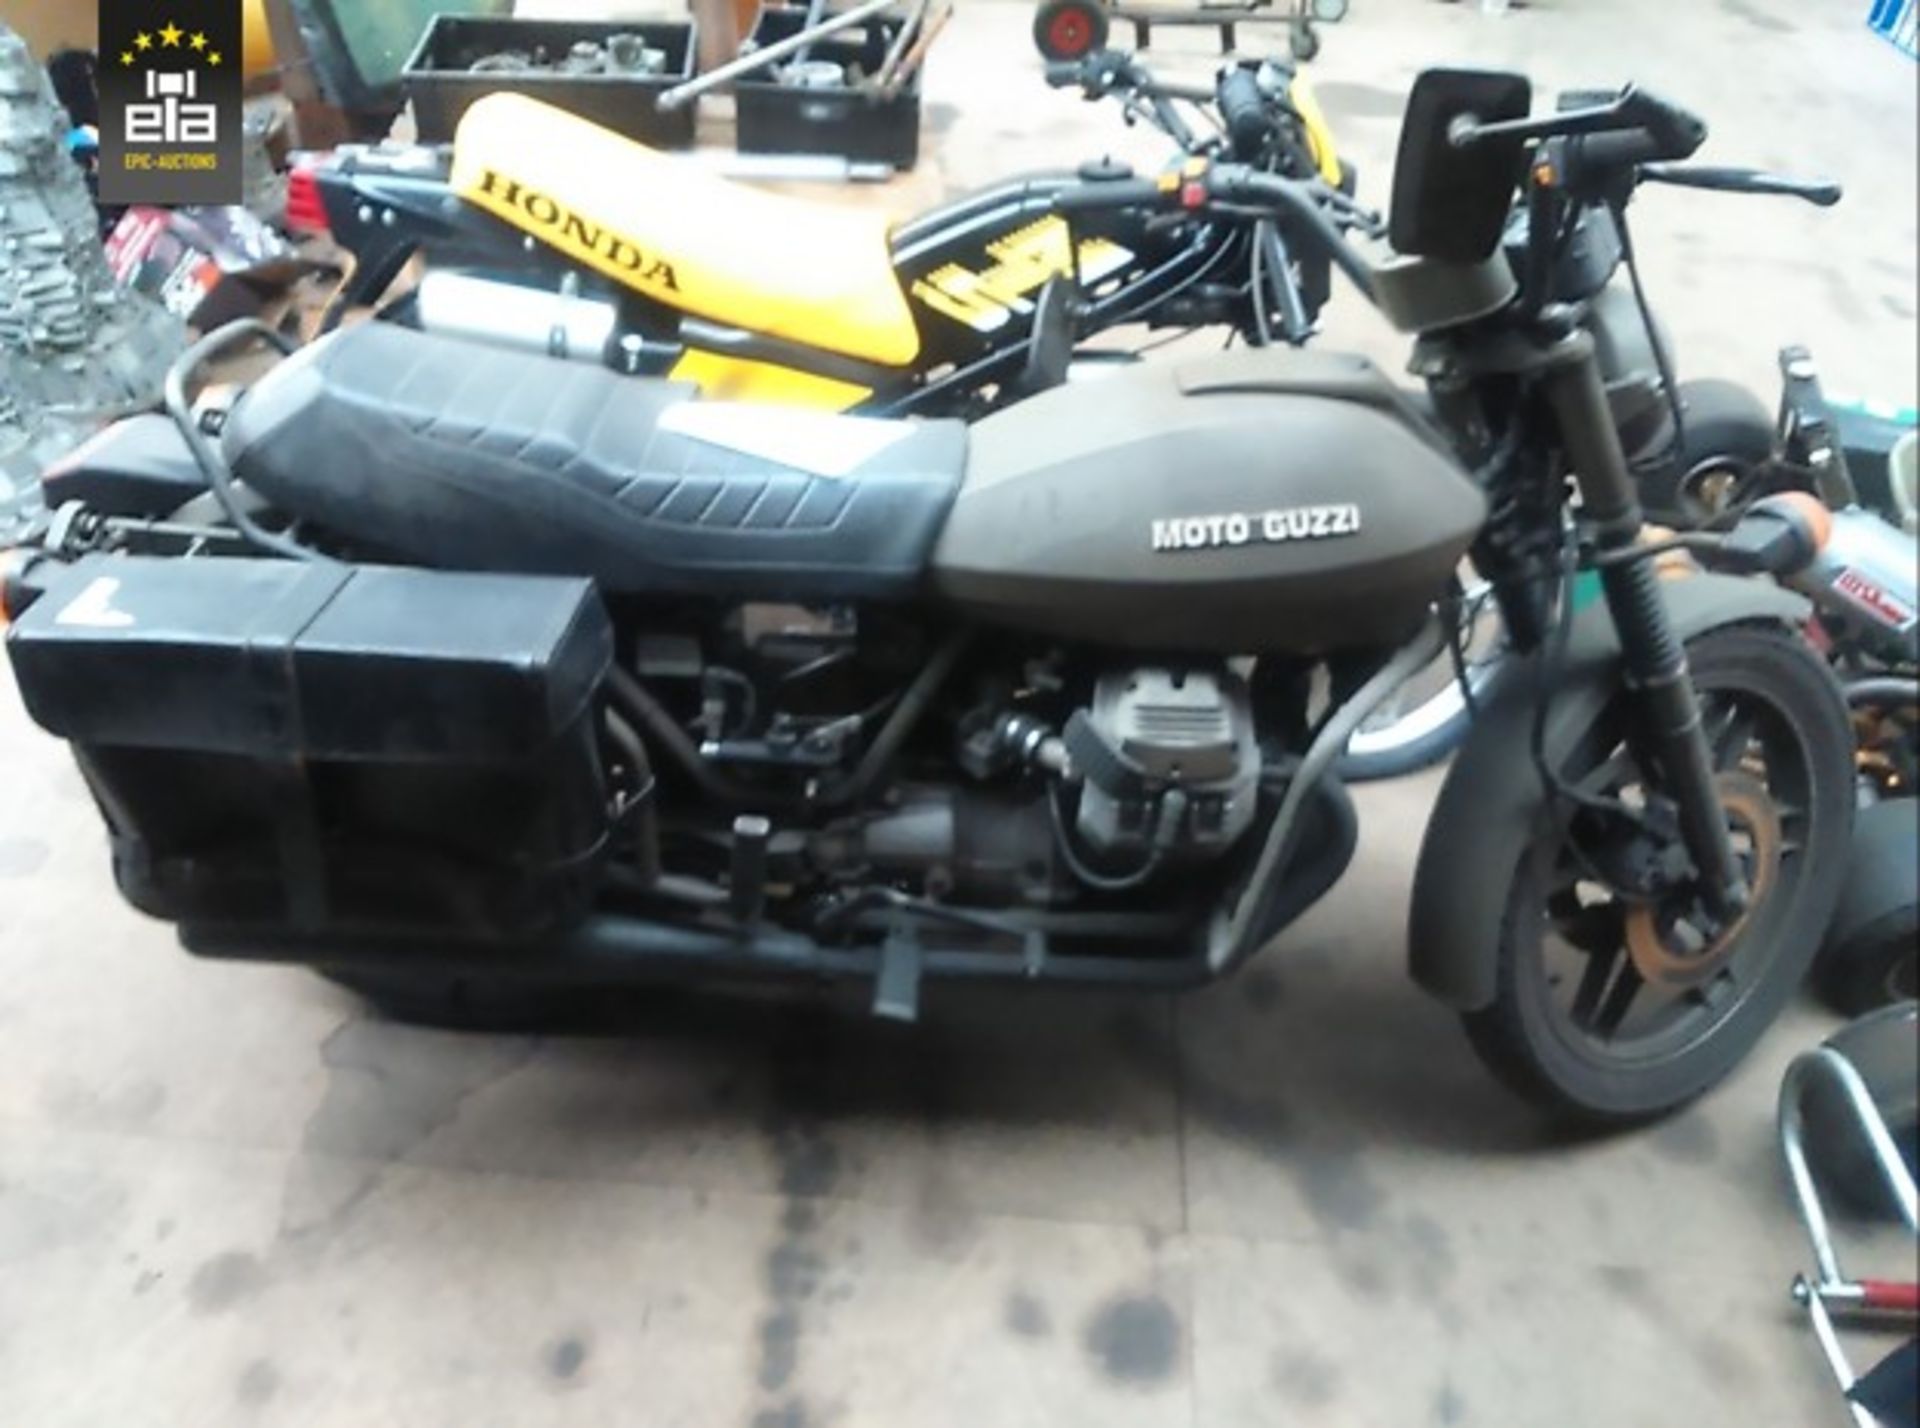 1985 Moto Guzzi 20140534 - Image 5 of 9